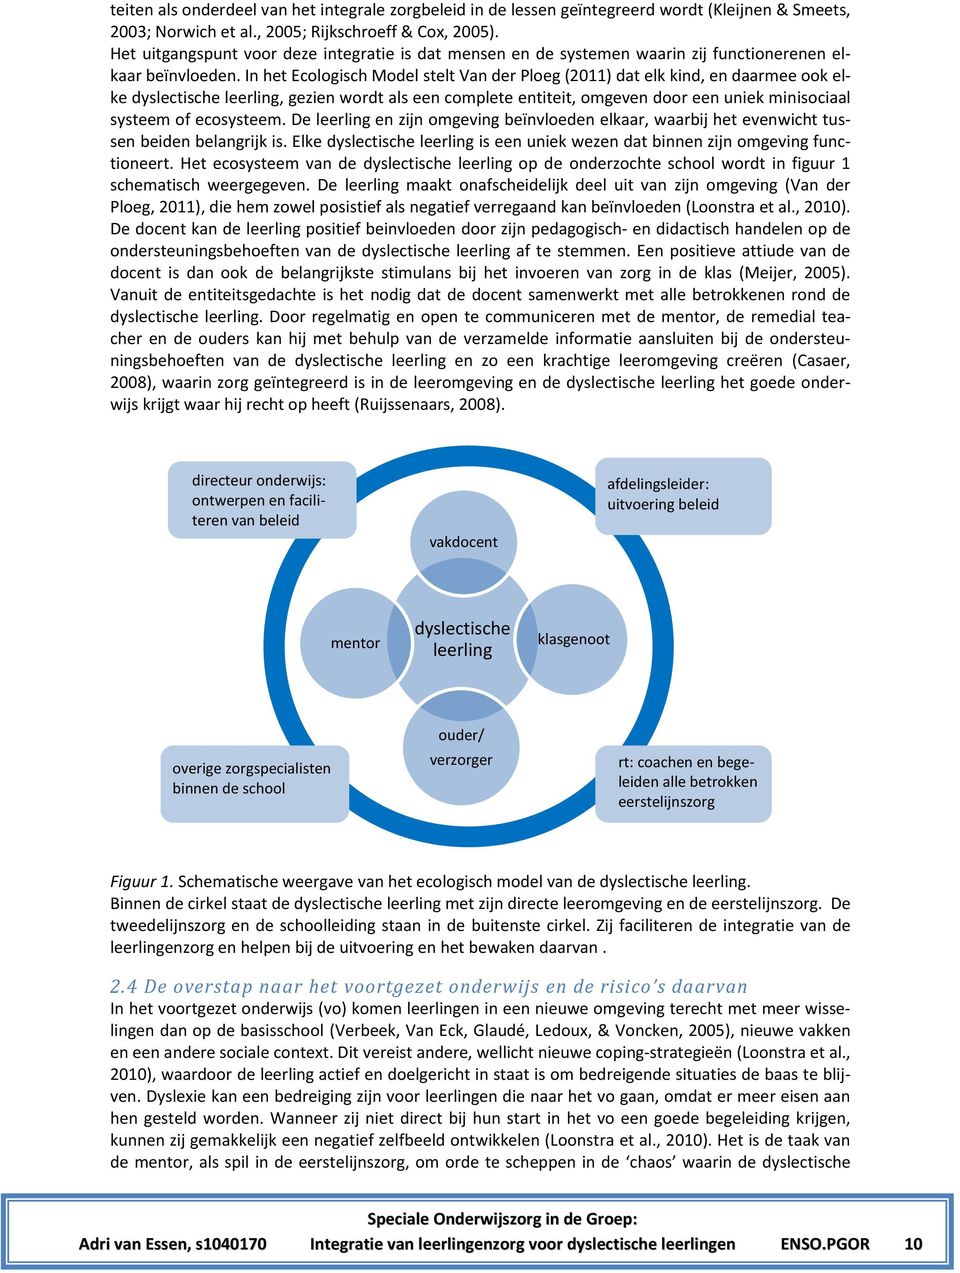 In het Ecologisch Model stelt Van der Ploeg (2011) dat elk kind, en daarmee ook elke dyslectische leerling, gezien wordt als een complete entiteit, omgeven door een uniek minisociaal systeem of